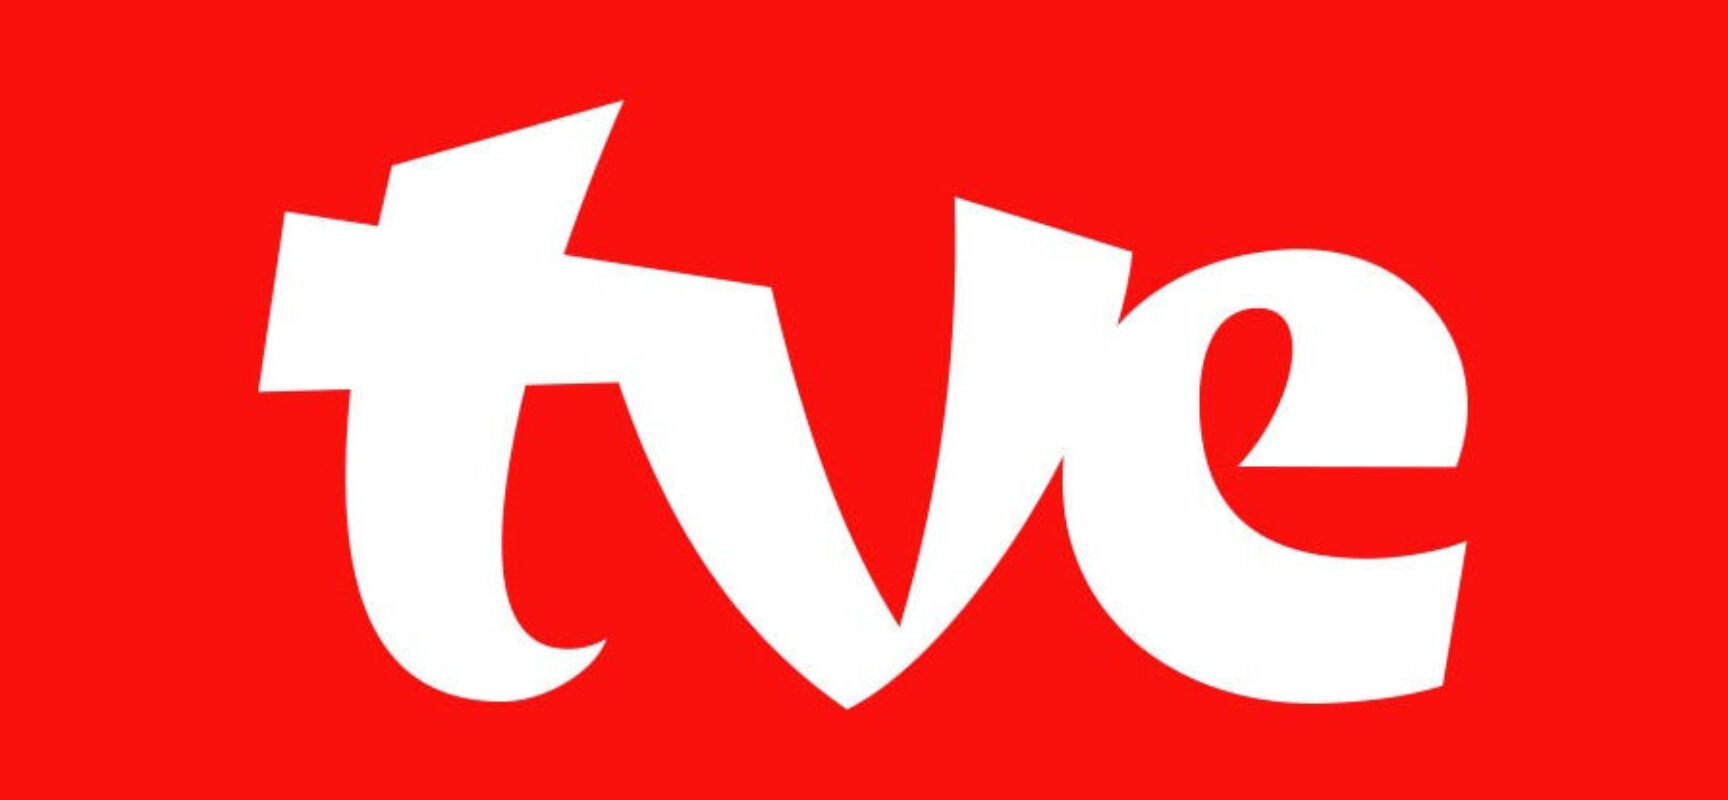 FUTEBOL: TVE estreou nova identidade visual